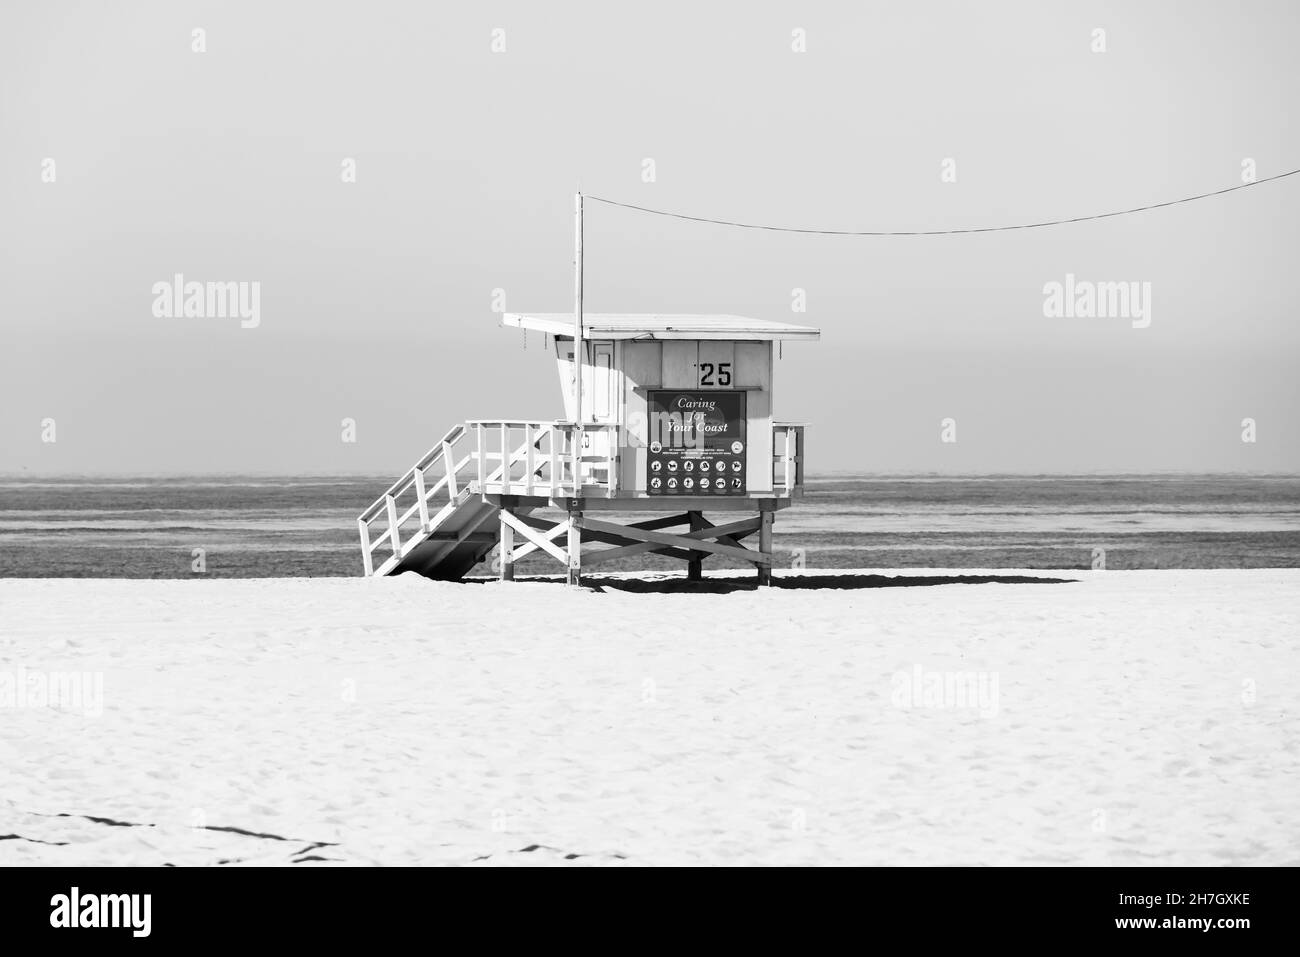 Noir et blanc, image monochrome de la hutte du maître-nageur numéro 25, plage de Santa Monica.Californie, États-Unis d'amérique.ÉTATS-UNIS.Octobre 2019 Banque D'Images